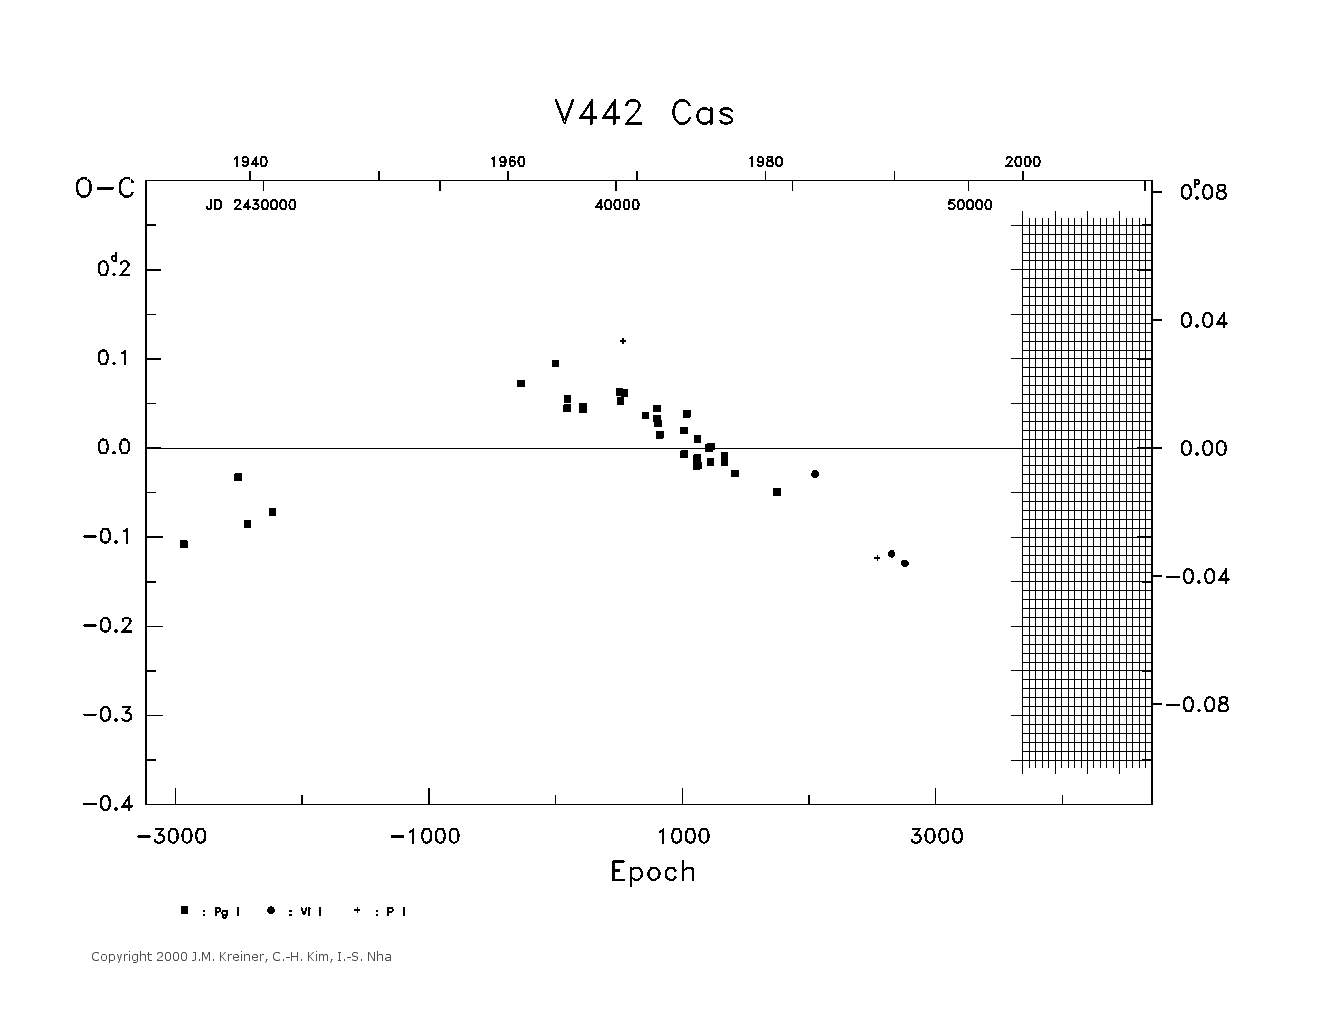 [IMAGE: large V442 CAS O-C diagram]